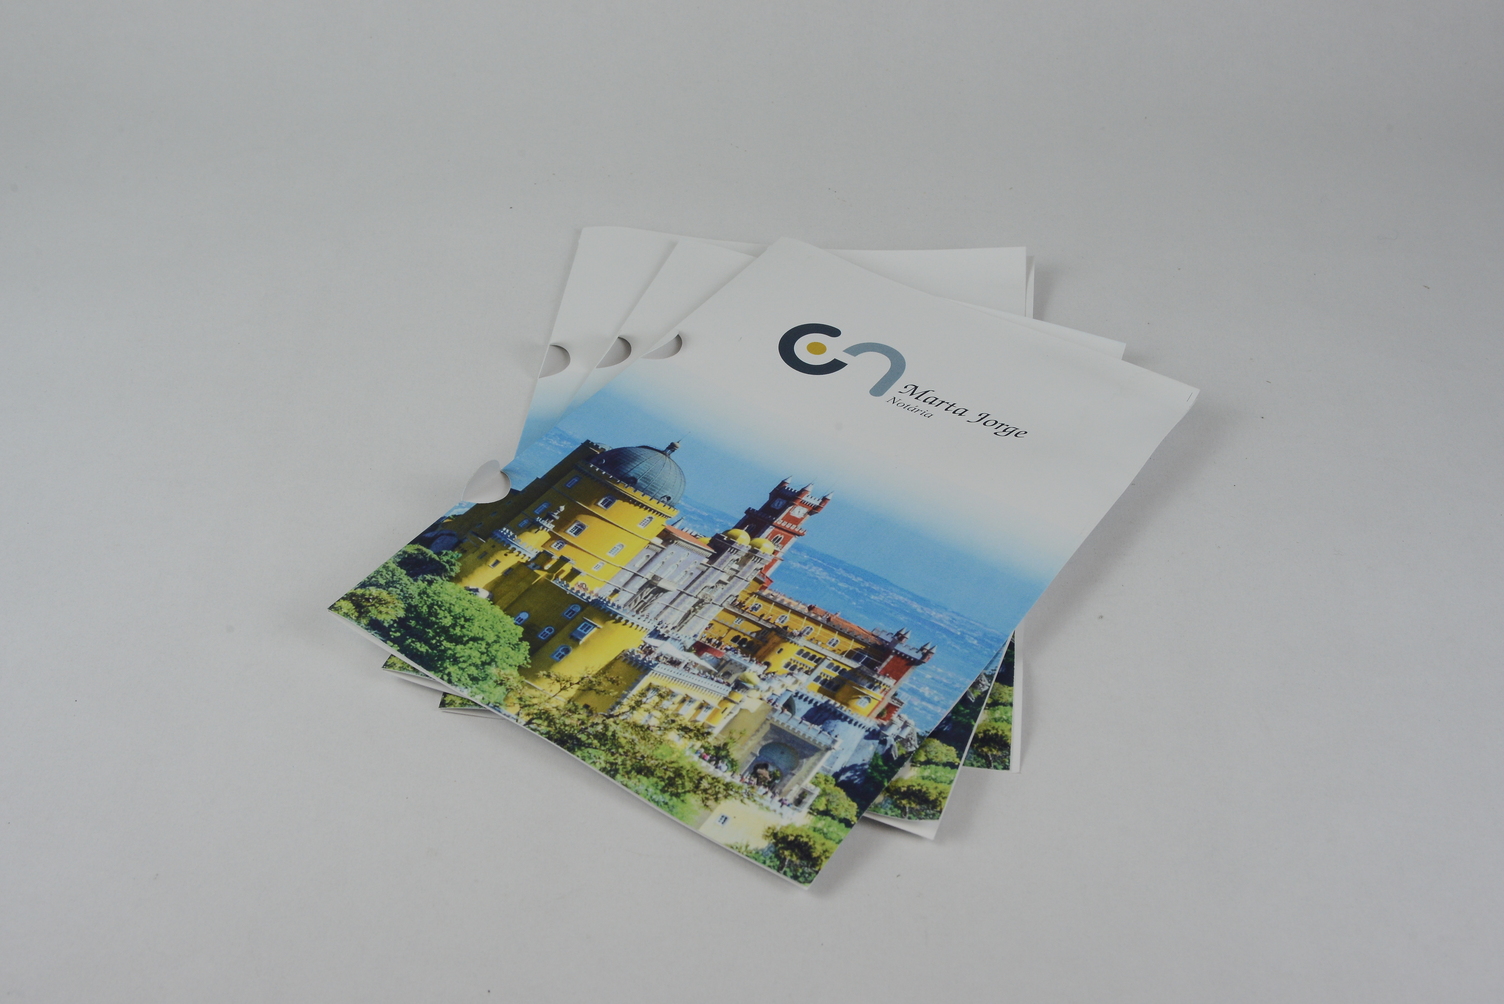 capas_arquivo_capas_personalizadas_catalogos_revistas_brochuras_impressão_digital_trabalhos_gráficos